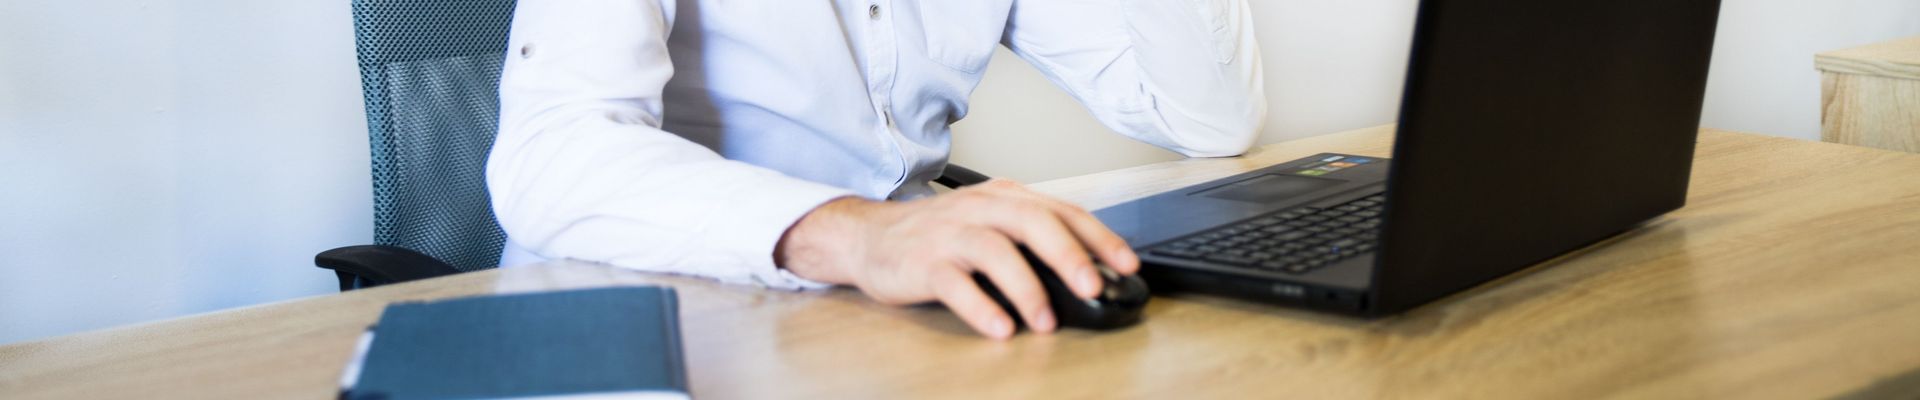 Ein Mann in einem rosa Hemd sitzt an einem Schreibtisch, lächelt und arbeitet an seinem Laptop.